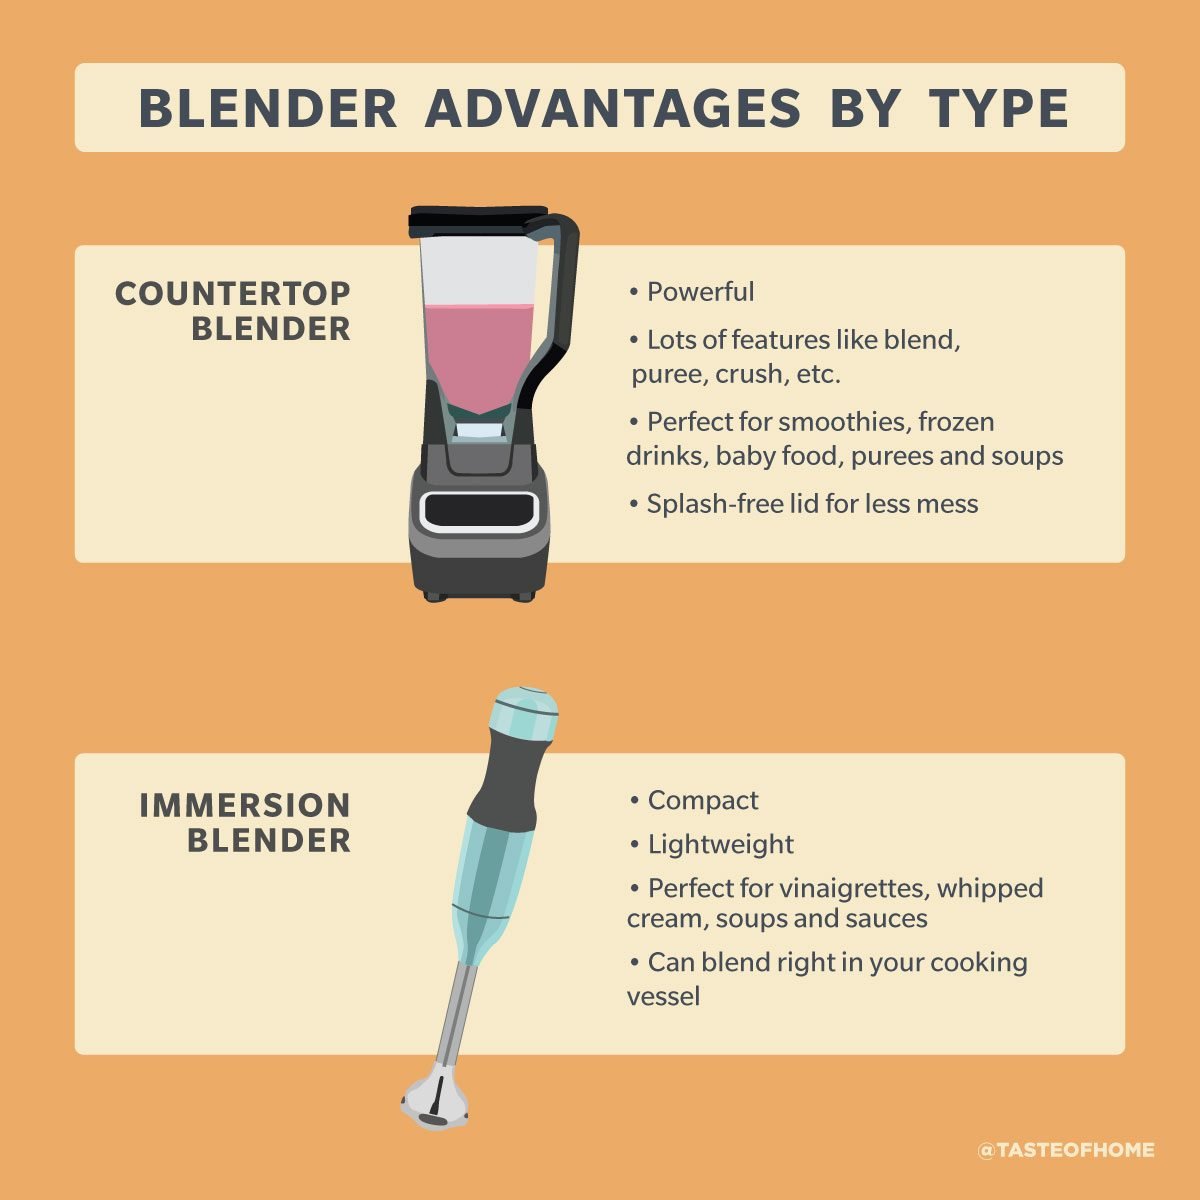 Blender vs. Immersion Blender: Which Should I Buy?